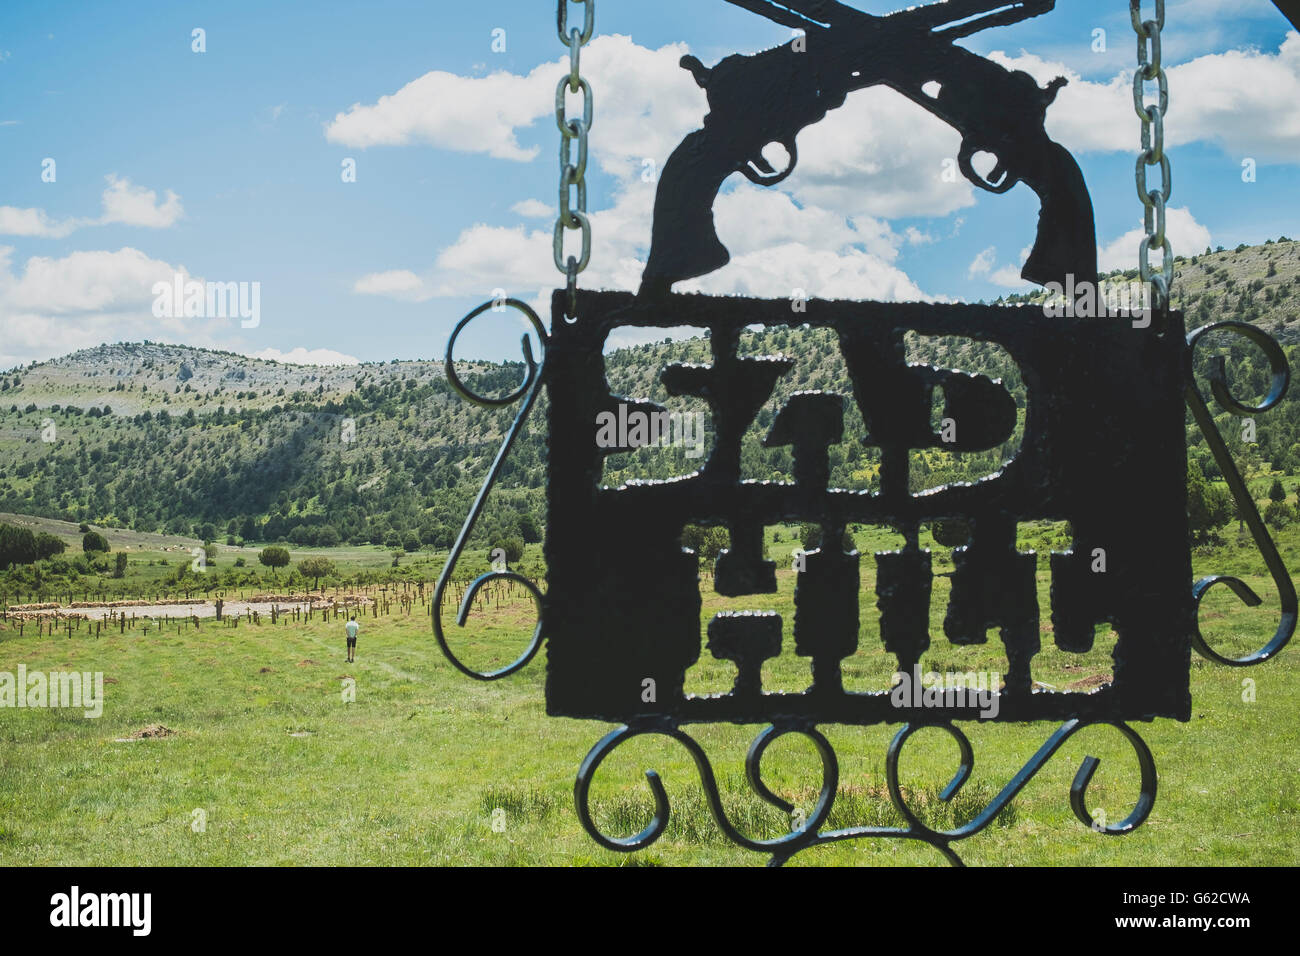 Sad Hill Cemetery - décrits dans le film "Le bon, la brute et le truand' - près de Covarrubias en Espagne Banque D'Images